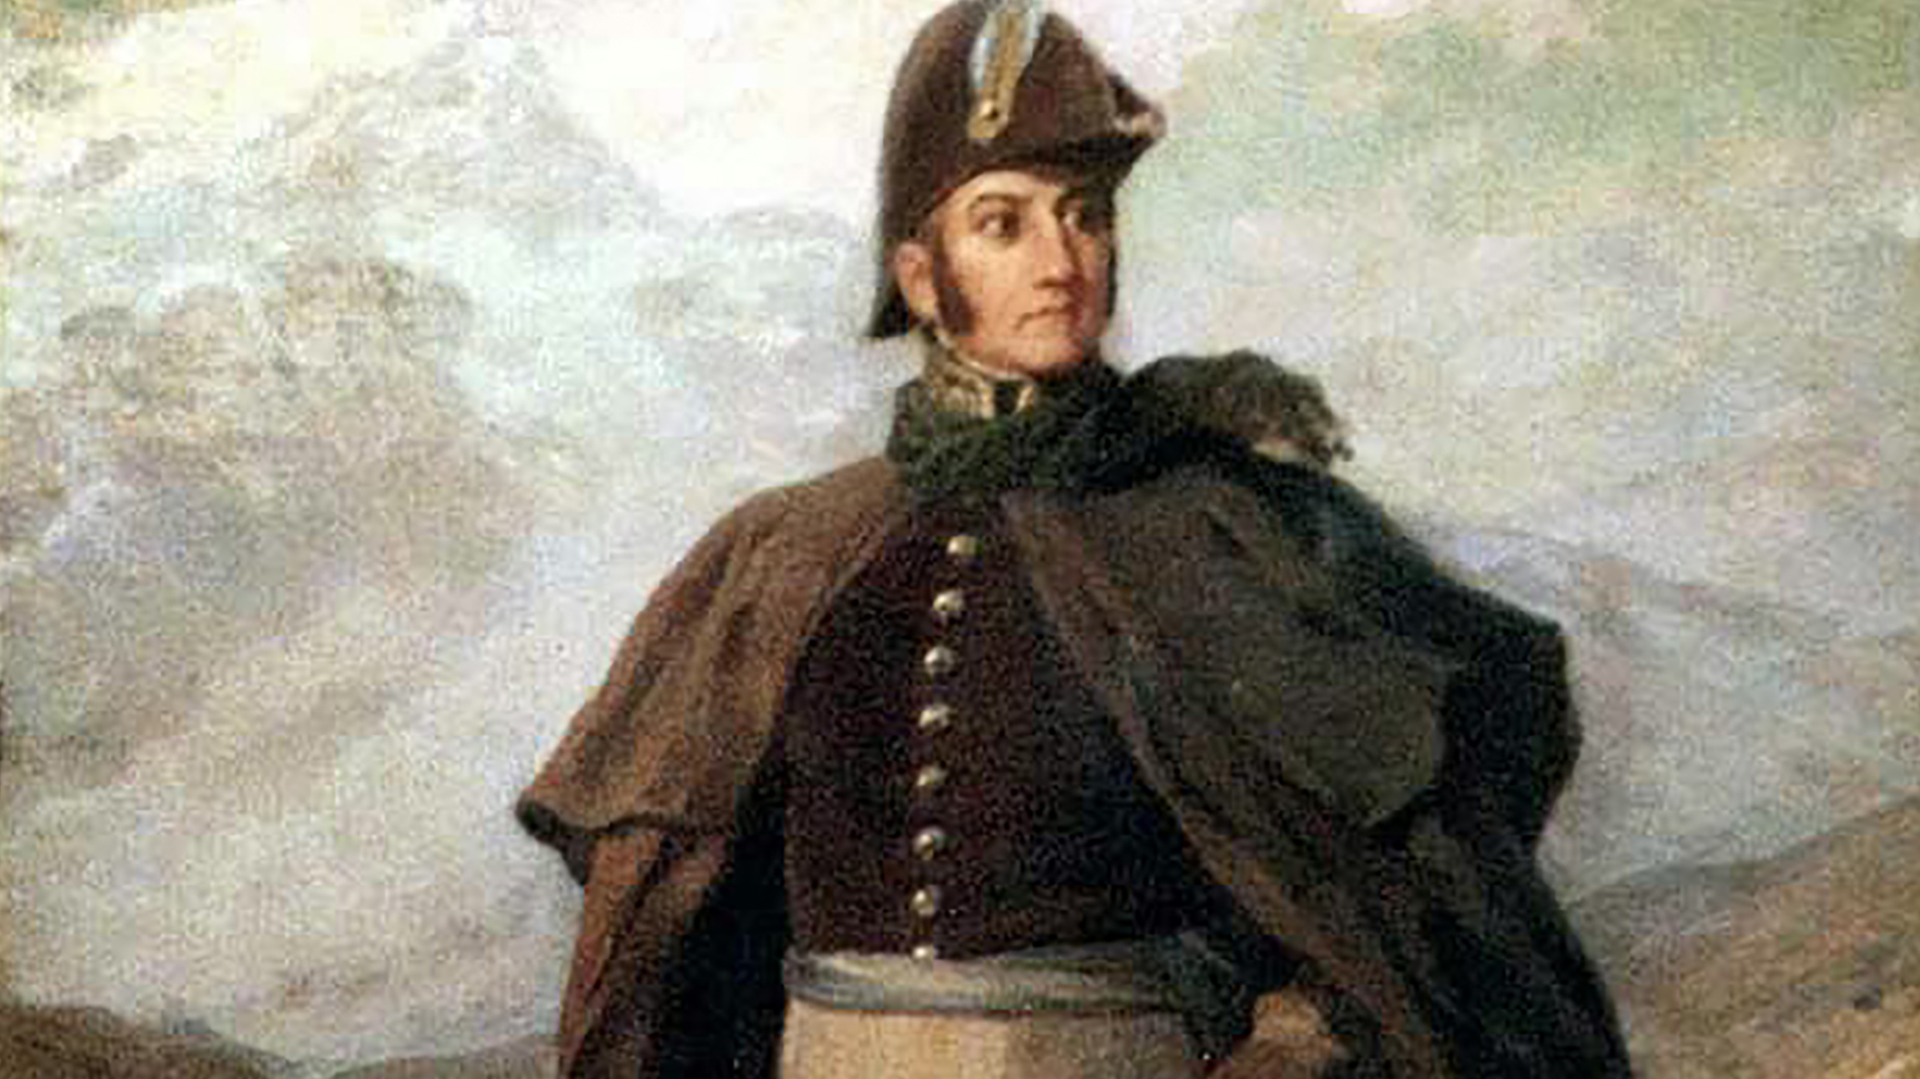 Rondeau fue trasladado como comandante del ejército al Alto Perú en reemplazo de José de San Martín, donde tuvo deserciones masivas y fue relevado del mando para entregárselo a Belgrano